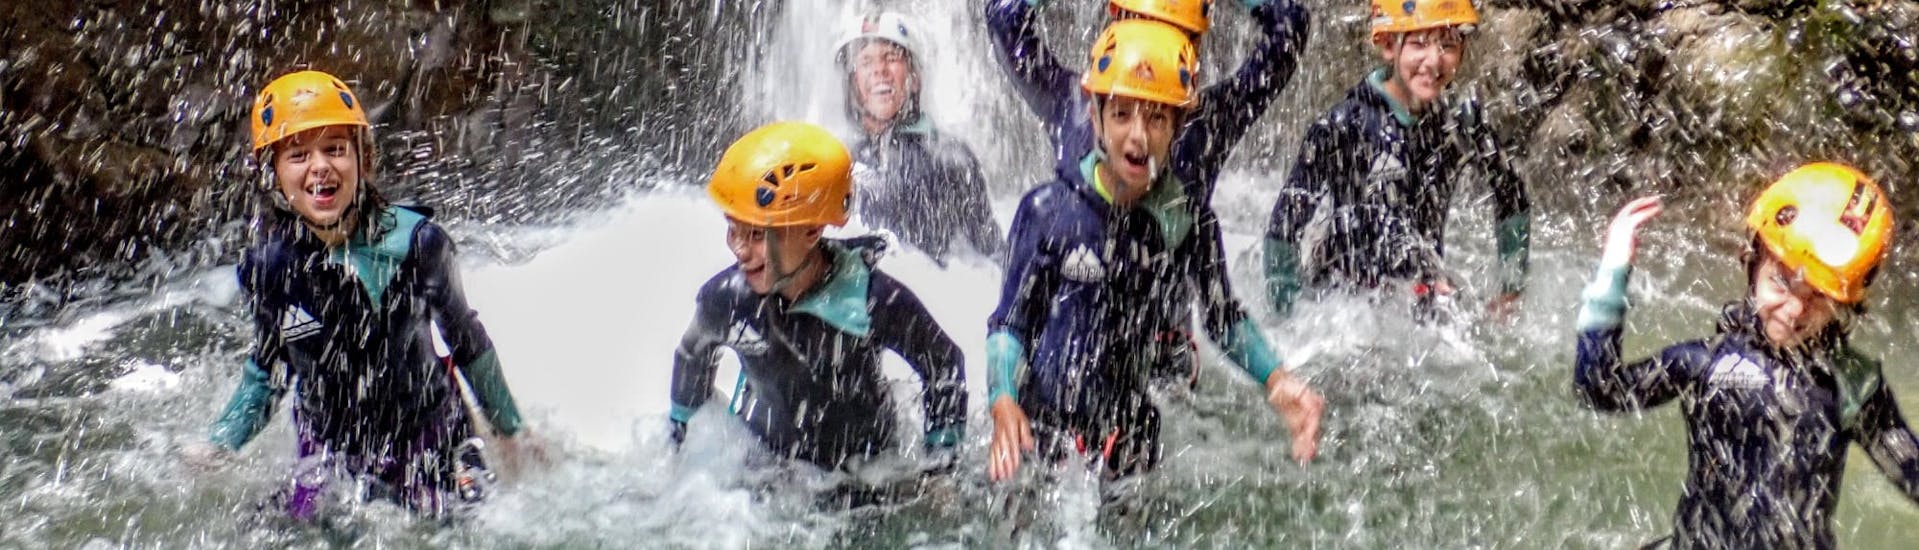 Niños disfrutando del Barranquismo en Vajo dell'Orsa para Principiantes y Familias con Xadventure Outdoor Lake Garda.